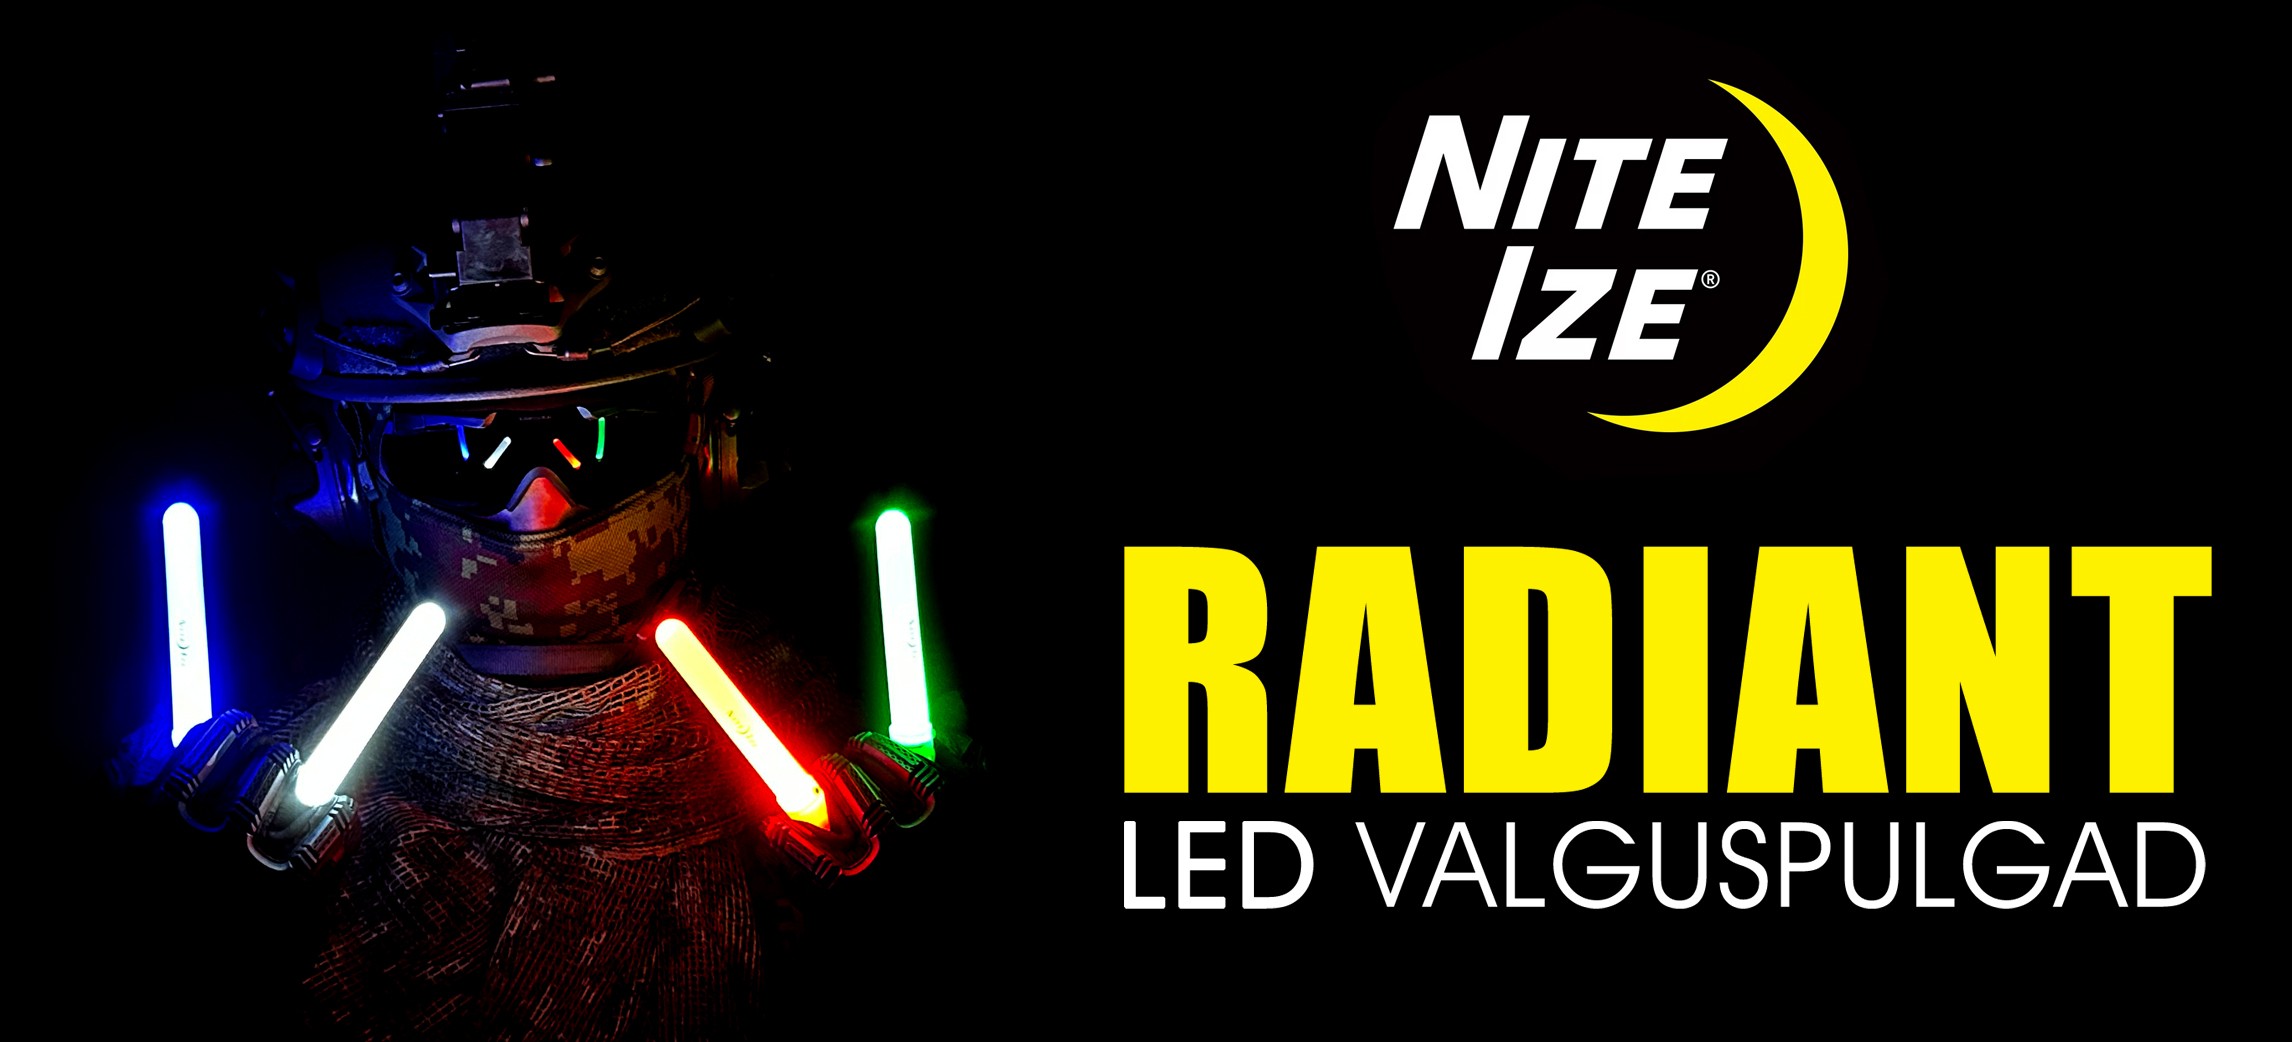 NITE IZE Radiant® LED valguspulgad